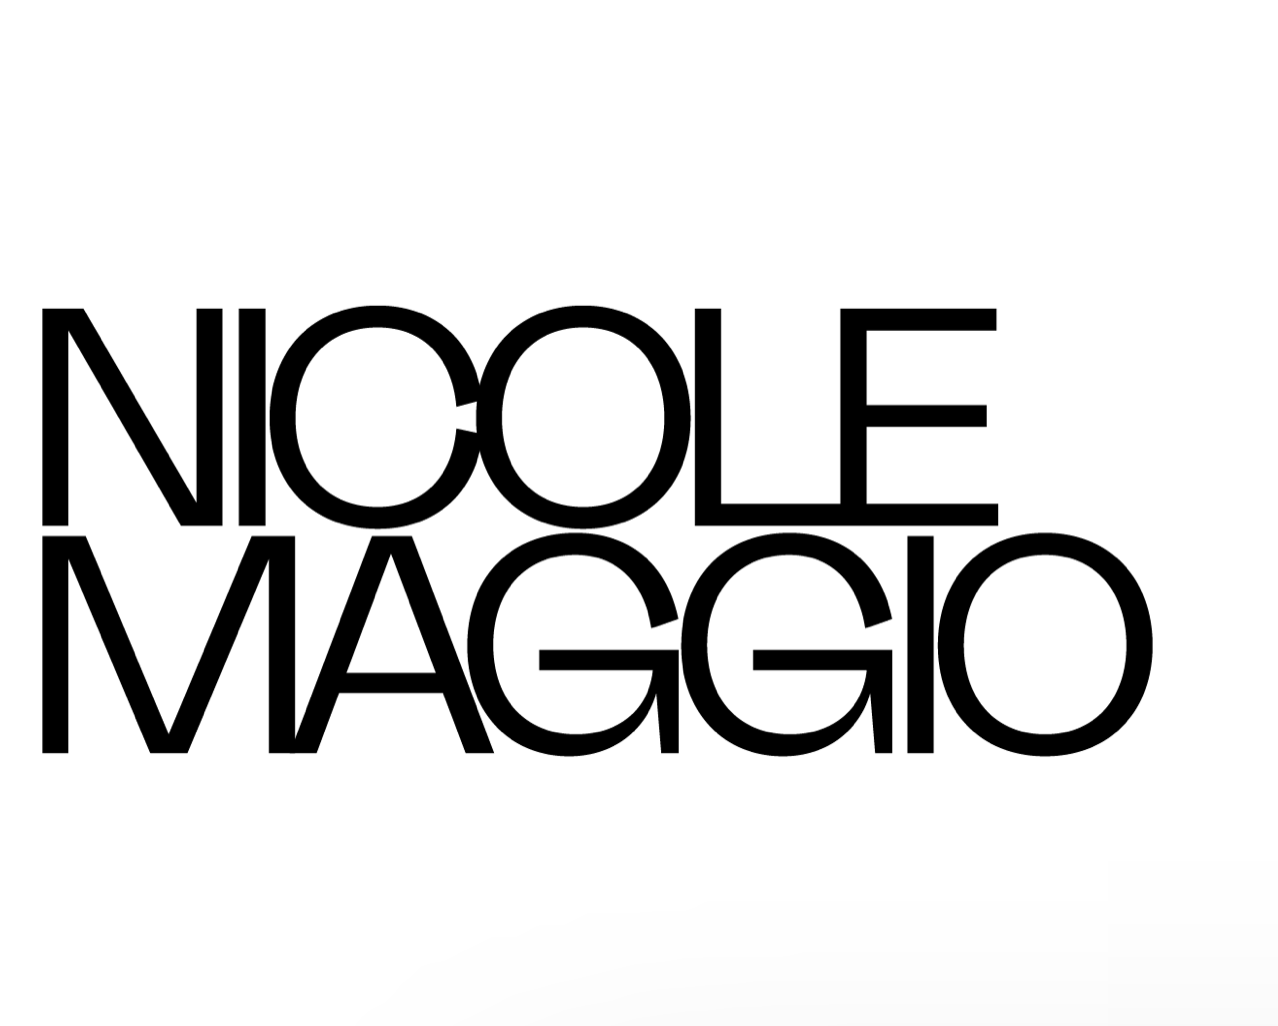 Nicole Maggio - Collage